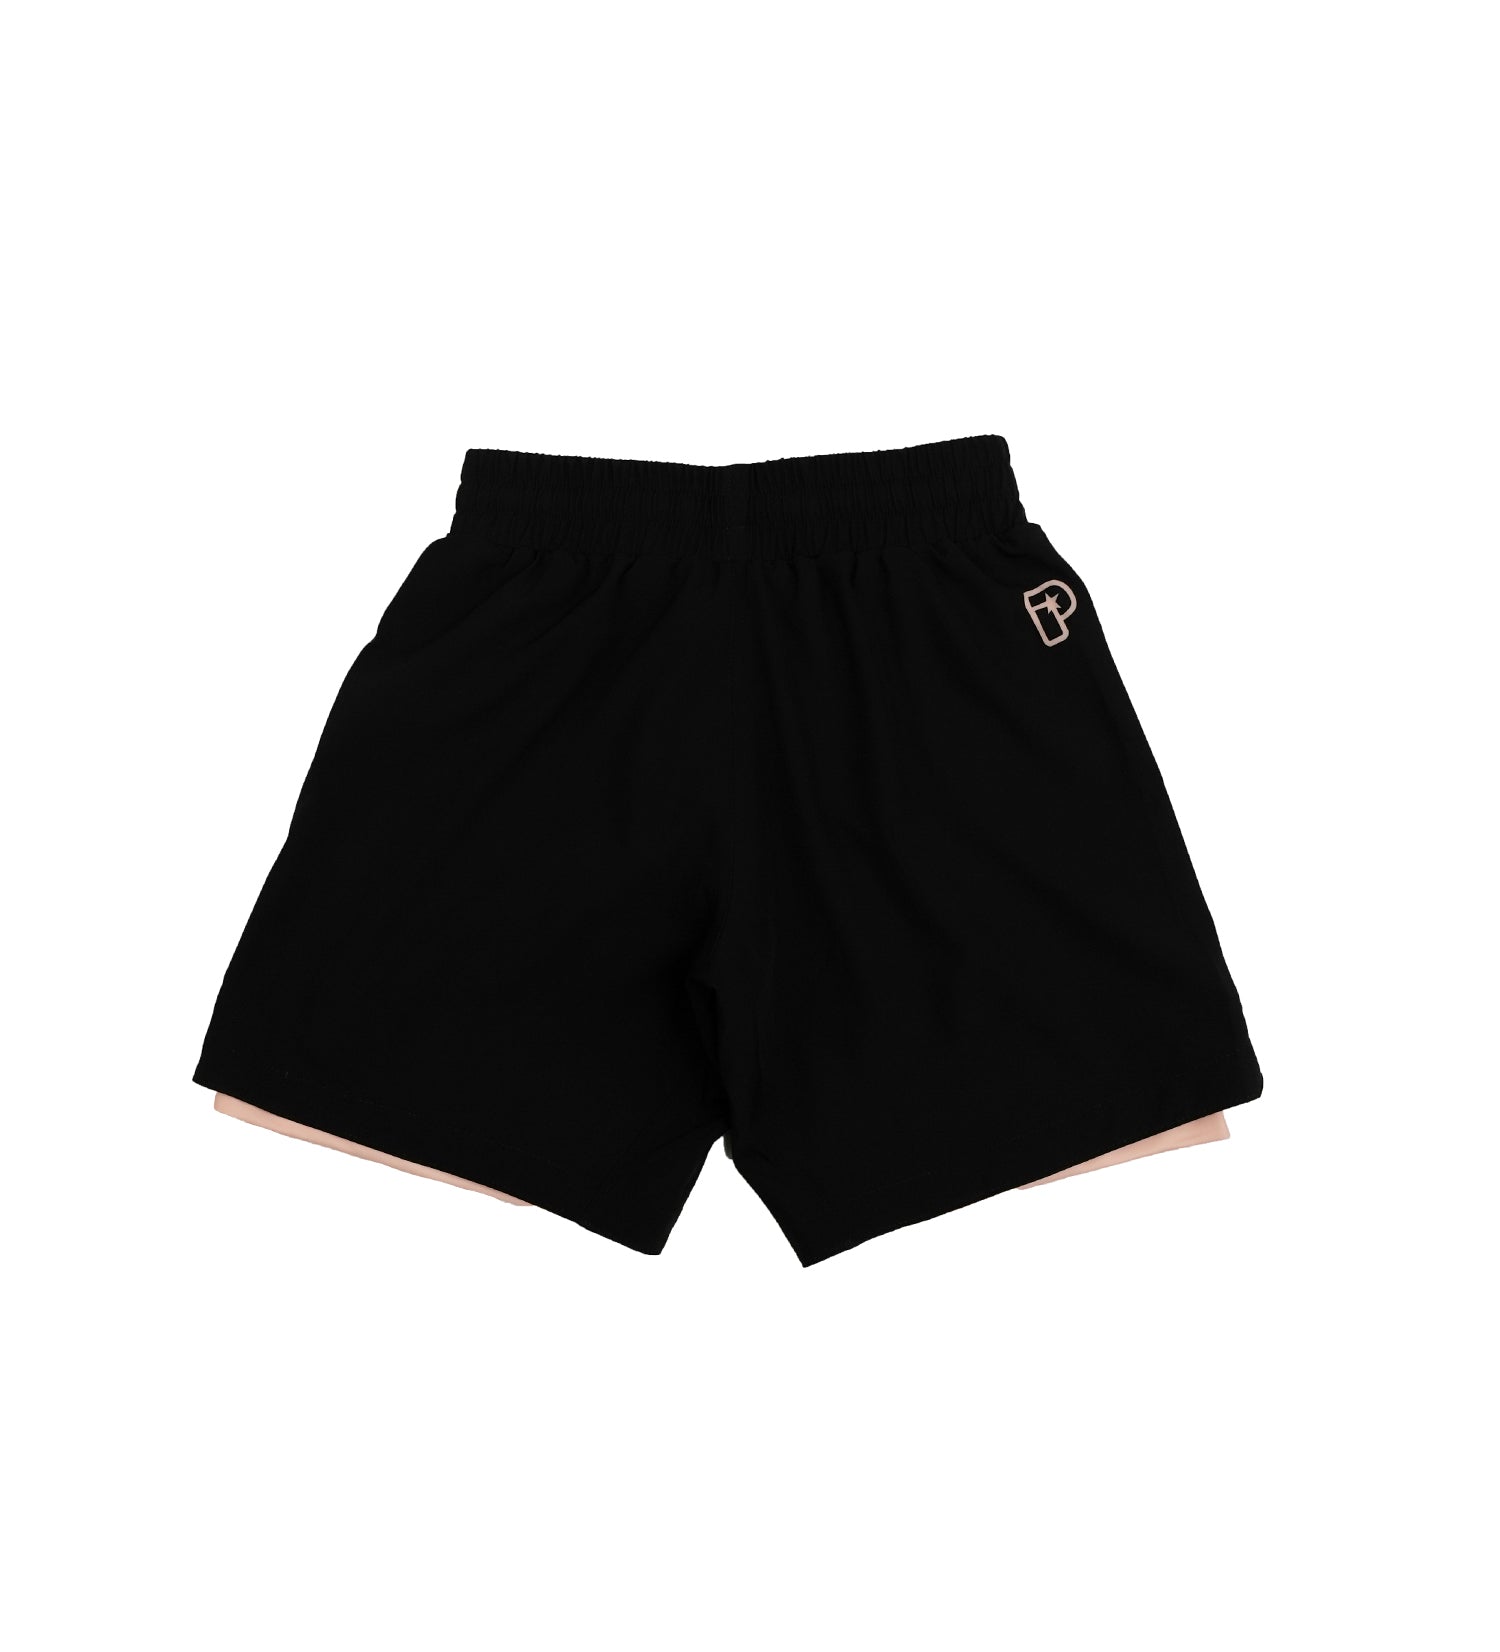 bjj hybrid shorts. bjj premium shorts. progress bjj premium. 